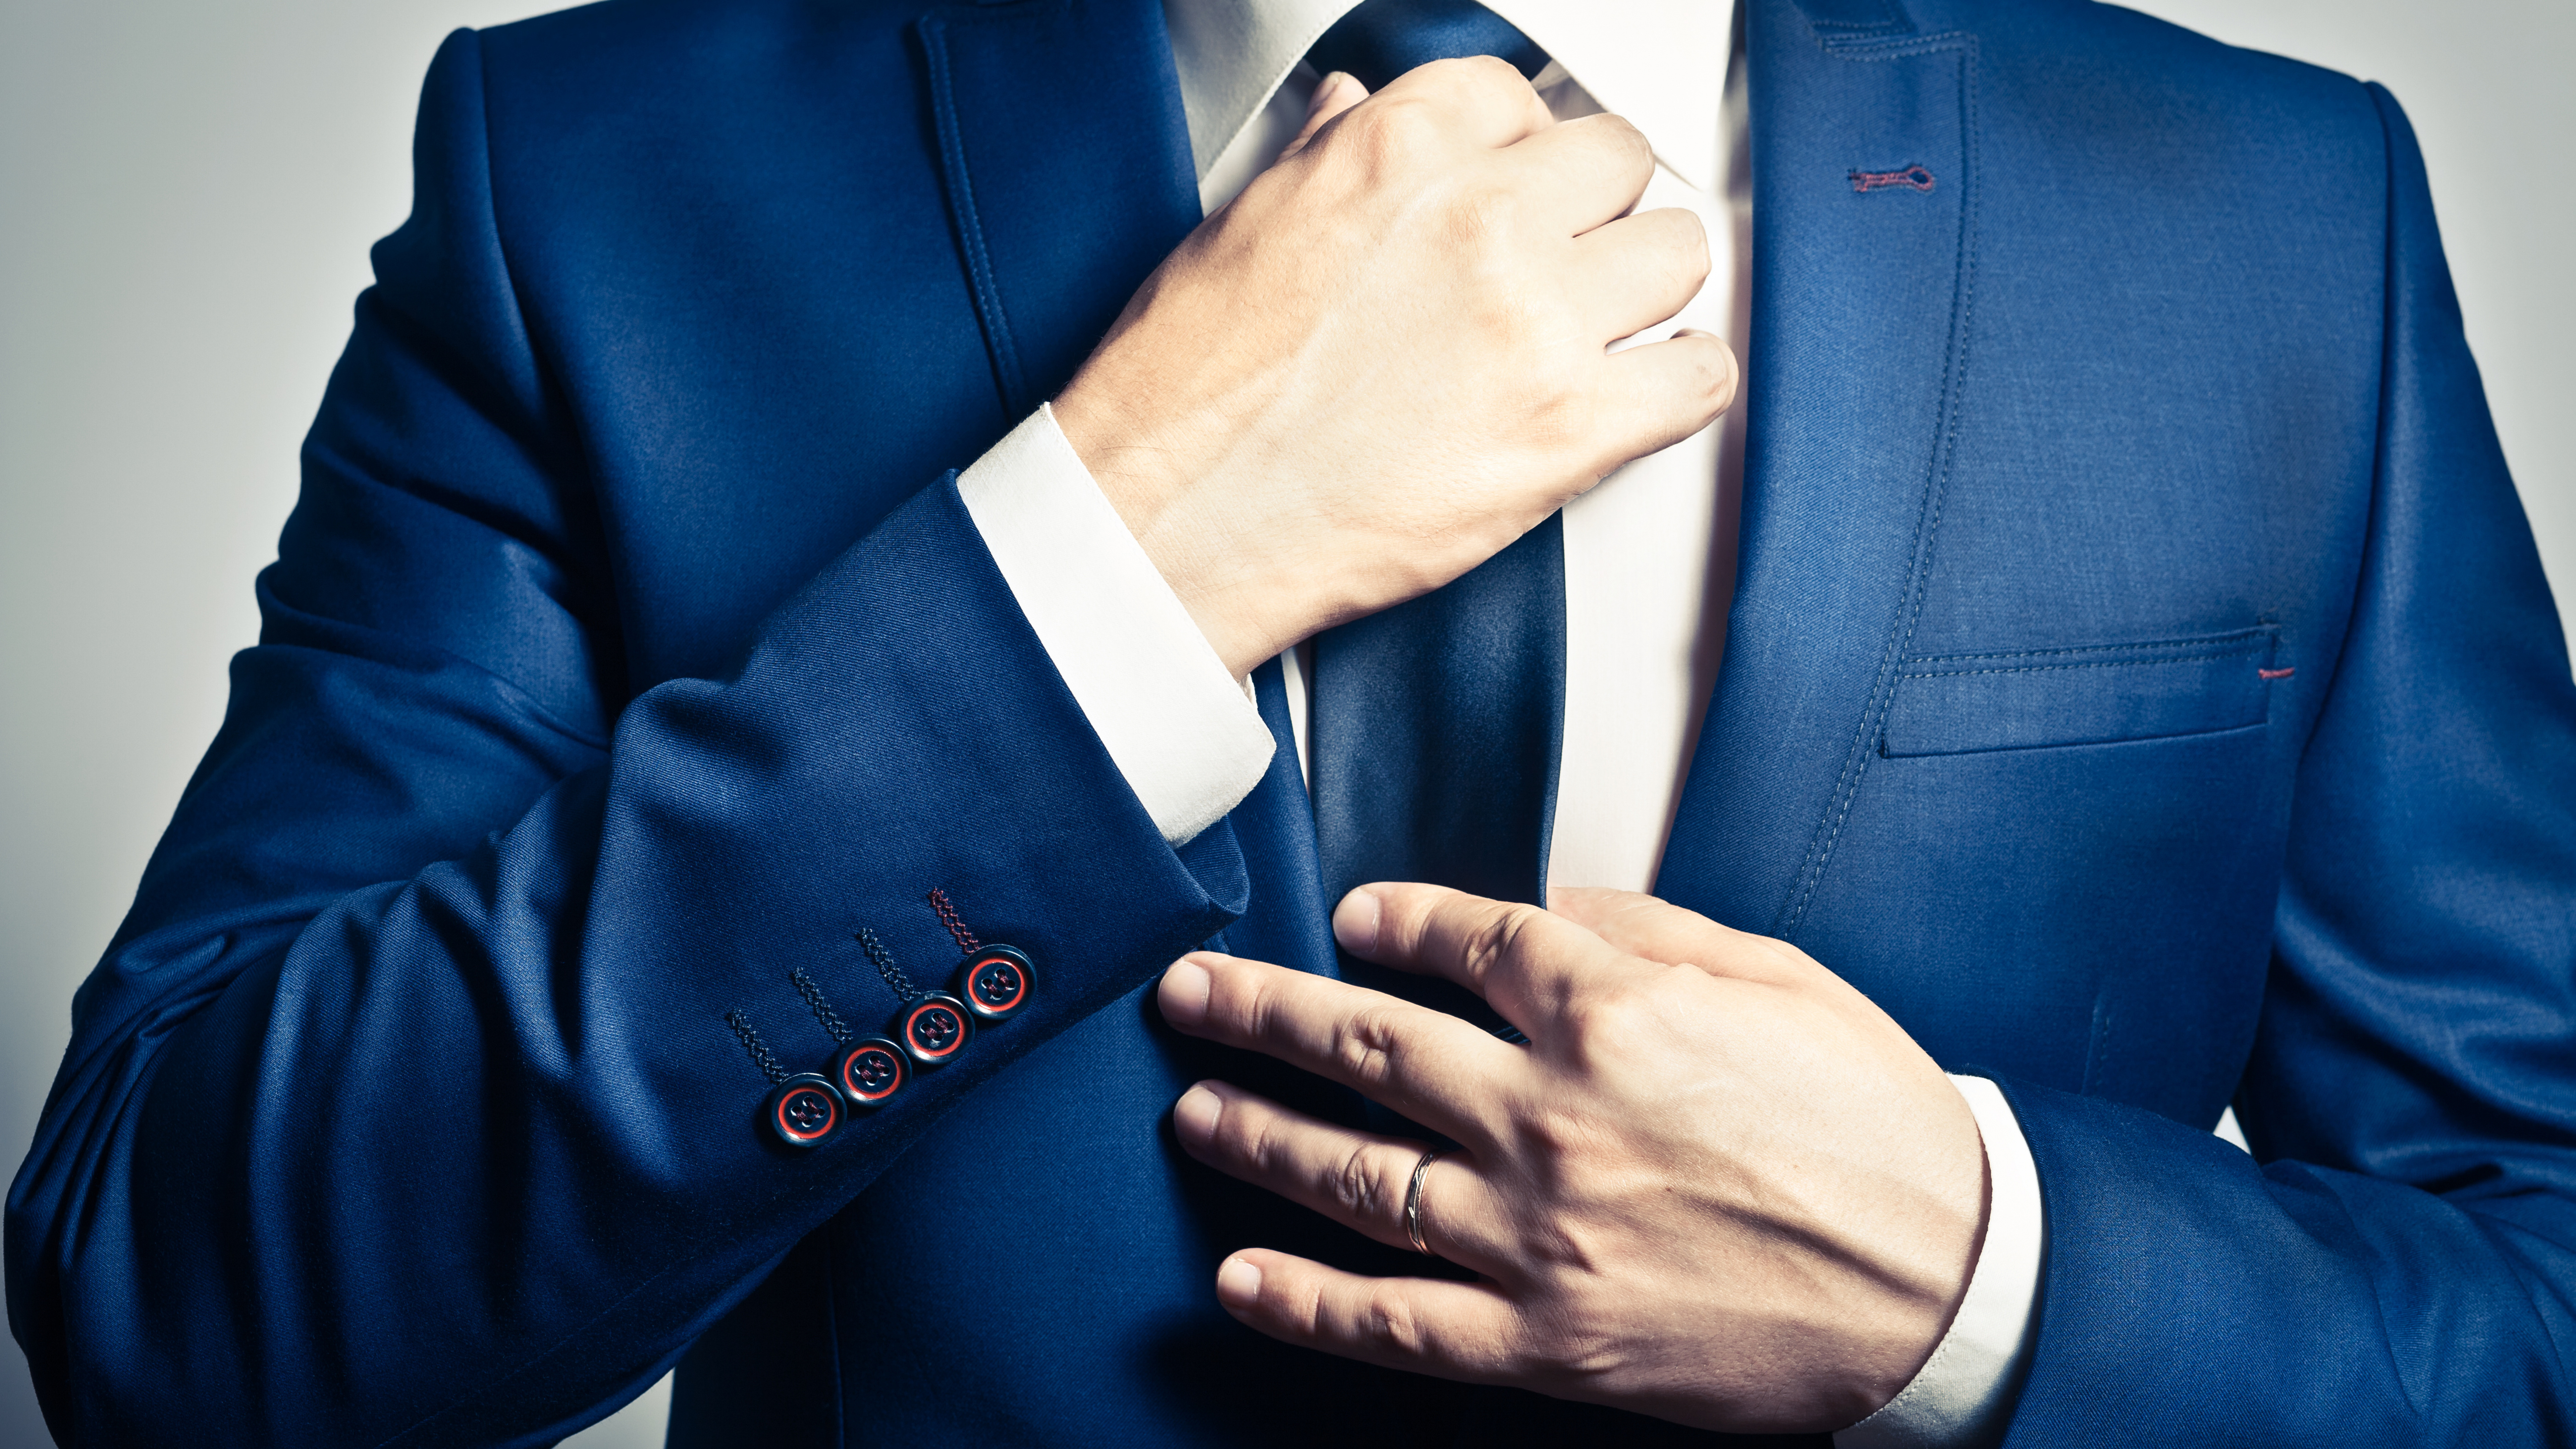 Necktie, Suit, Tuxedo, Blue, Formal Wear. Wallpaper in 7680x4320 Resolution